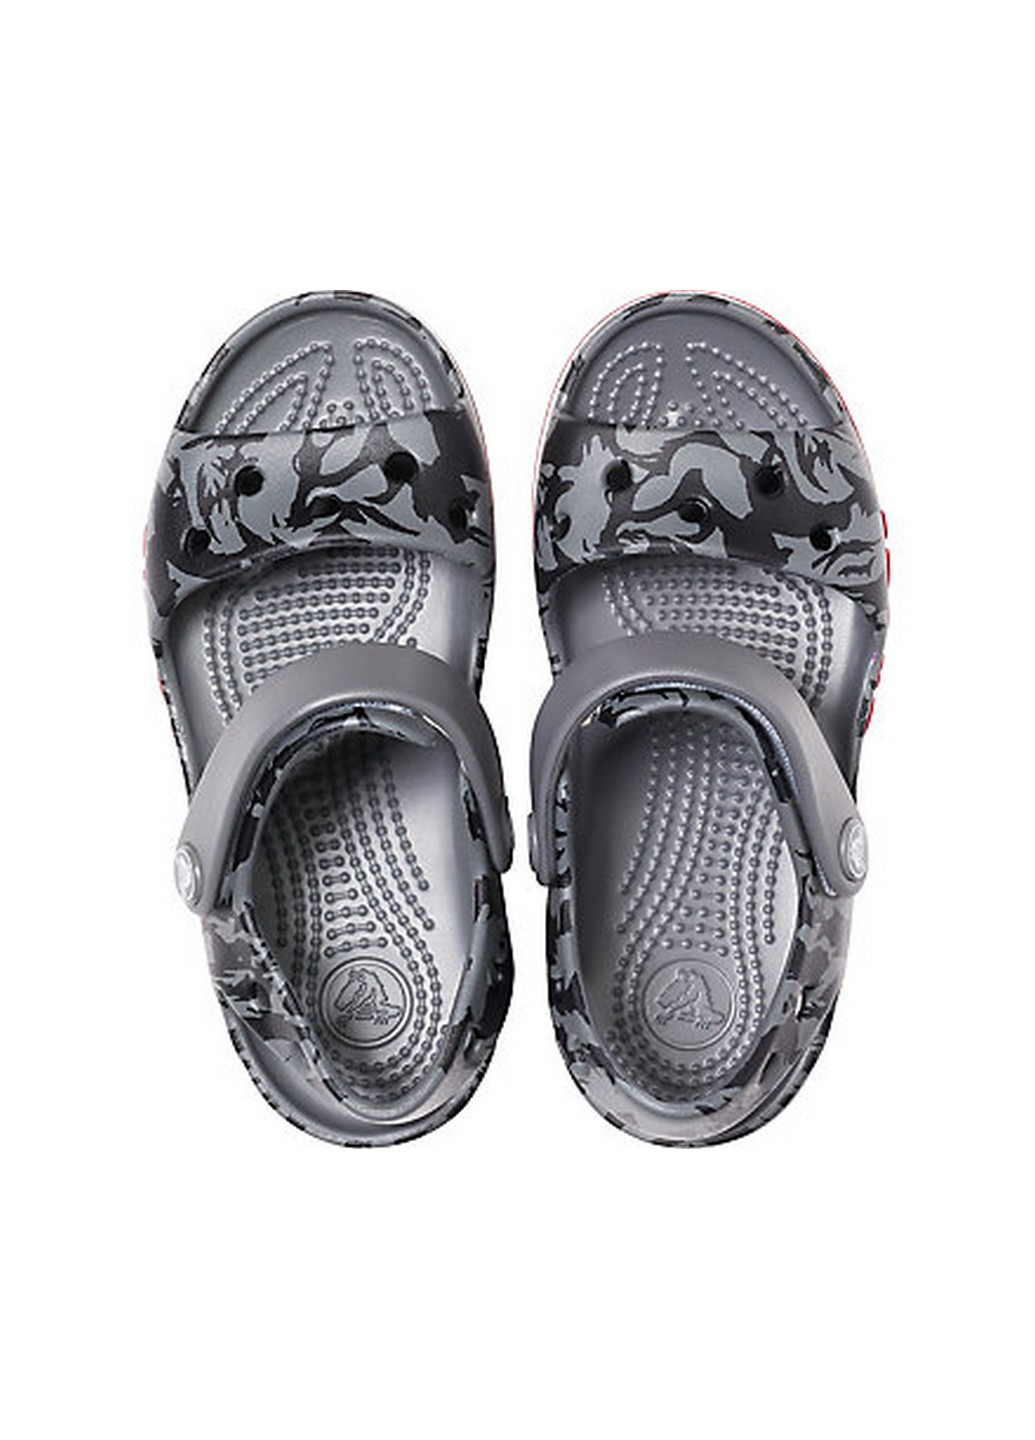 Серые спортивные крокс сандалии Crocs